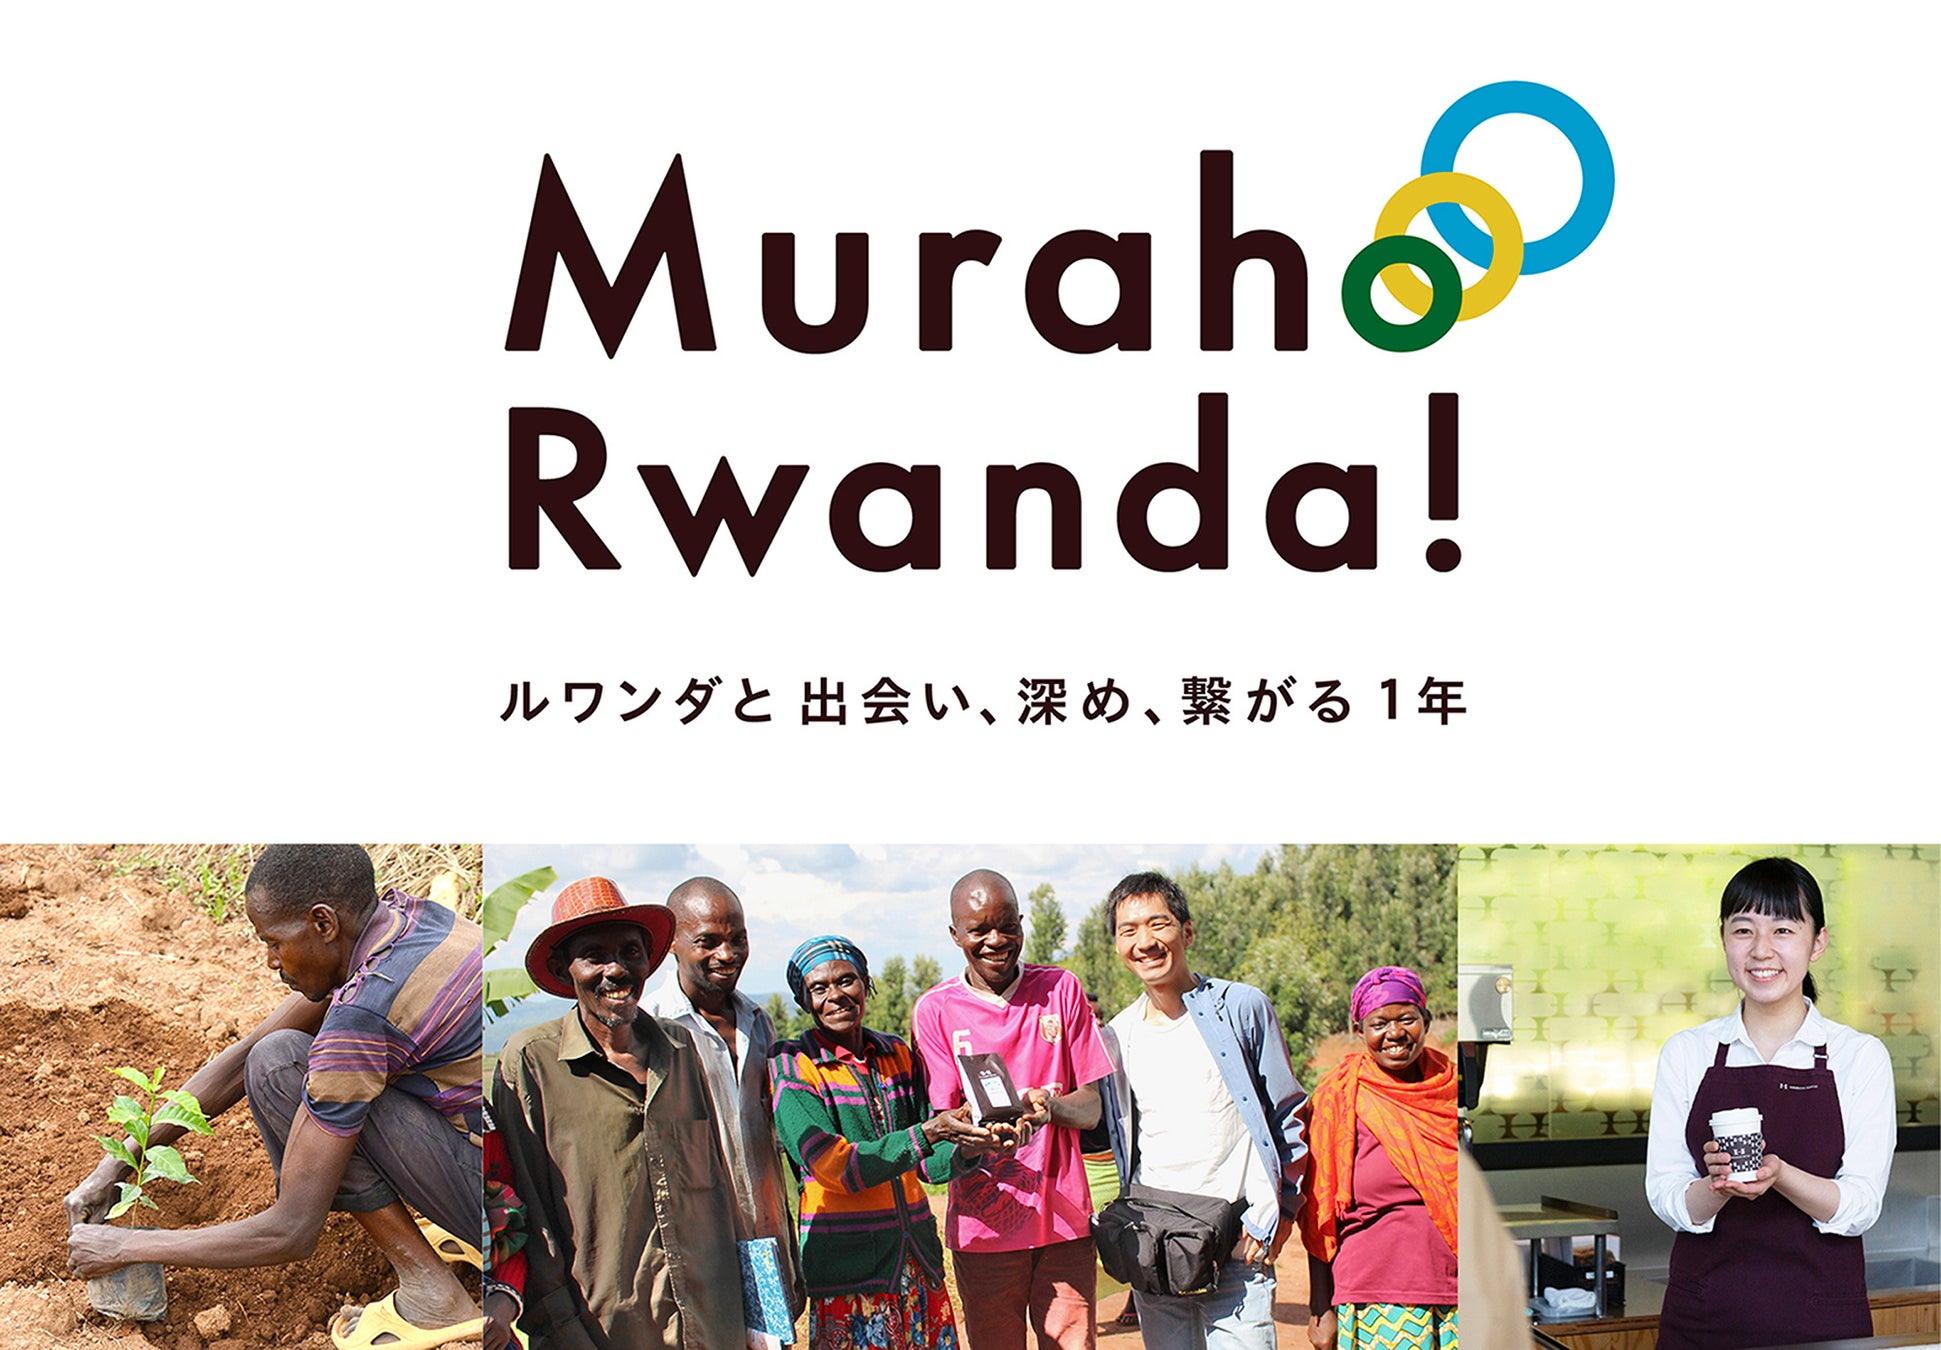 イベント「ルワンダと繋がる12日間」を開催　～ルワンダコーヒーの売上全額をルワンダへ寄付～　期間：10月7日（金）～10月18日（火）